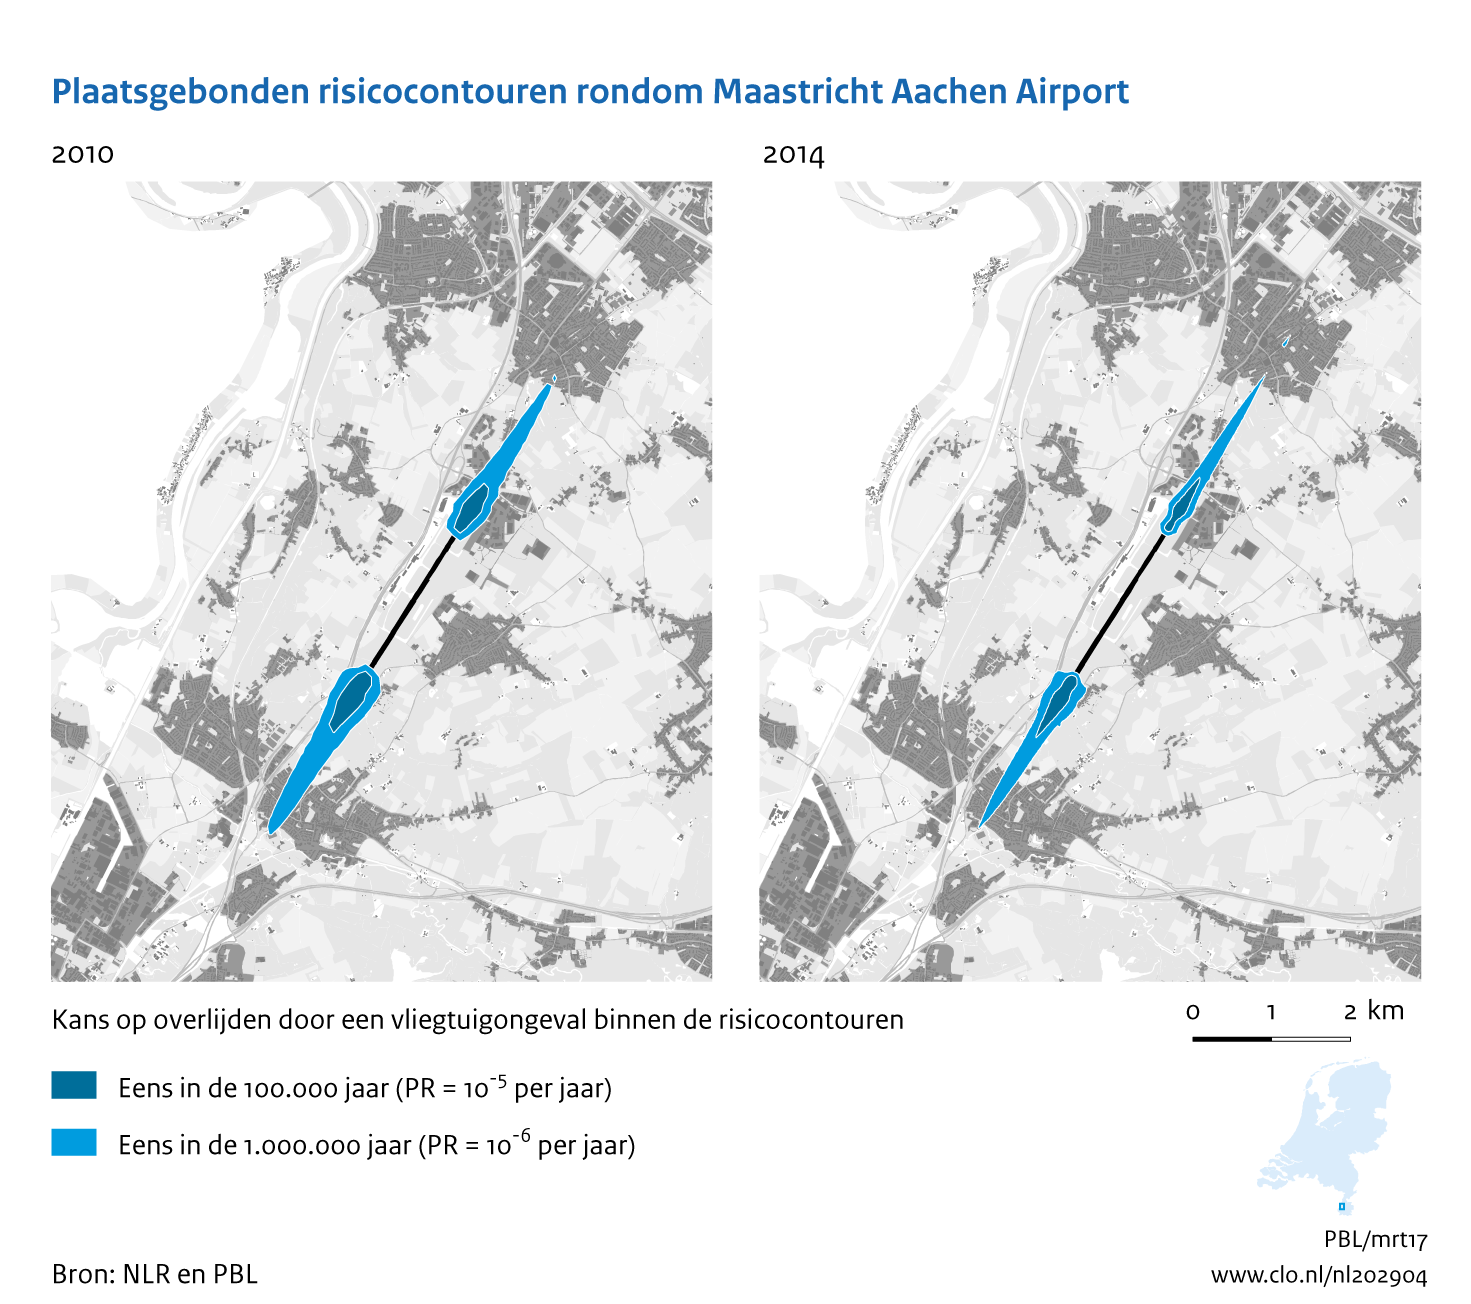 Figuur Plaatsgebonden risicocontouren rondom Maastricht Aachen Airport, 2010-2014. In de rest van de tekst wordt deze figuur uitgebreider uitgelegd.